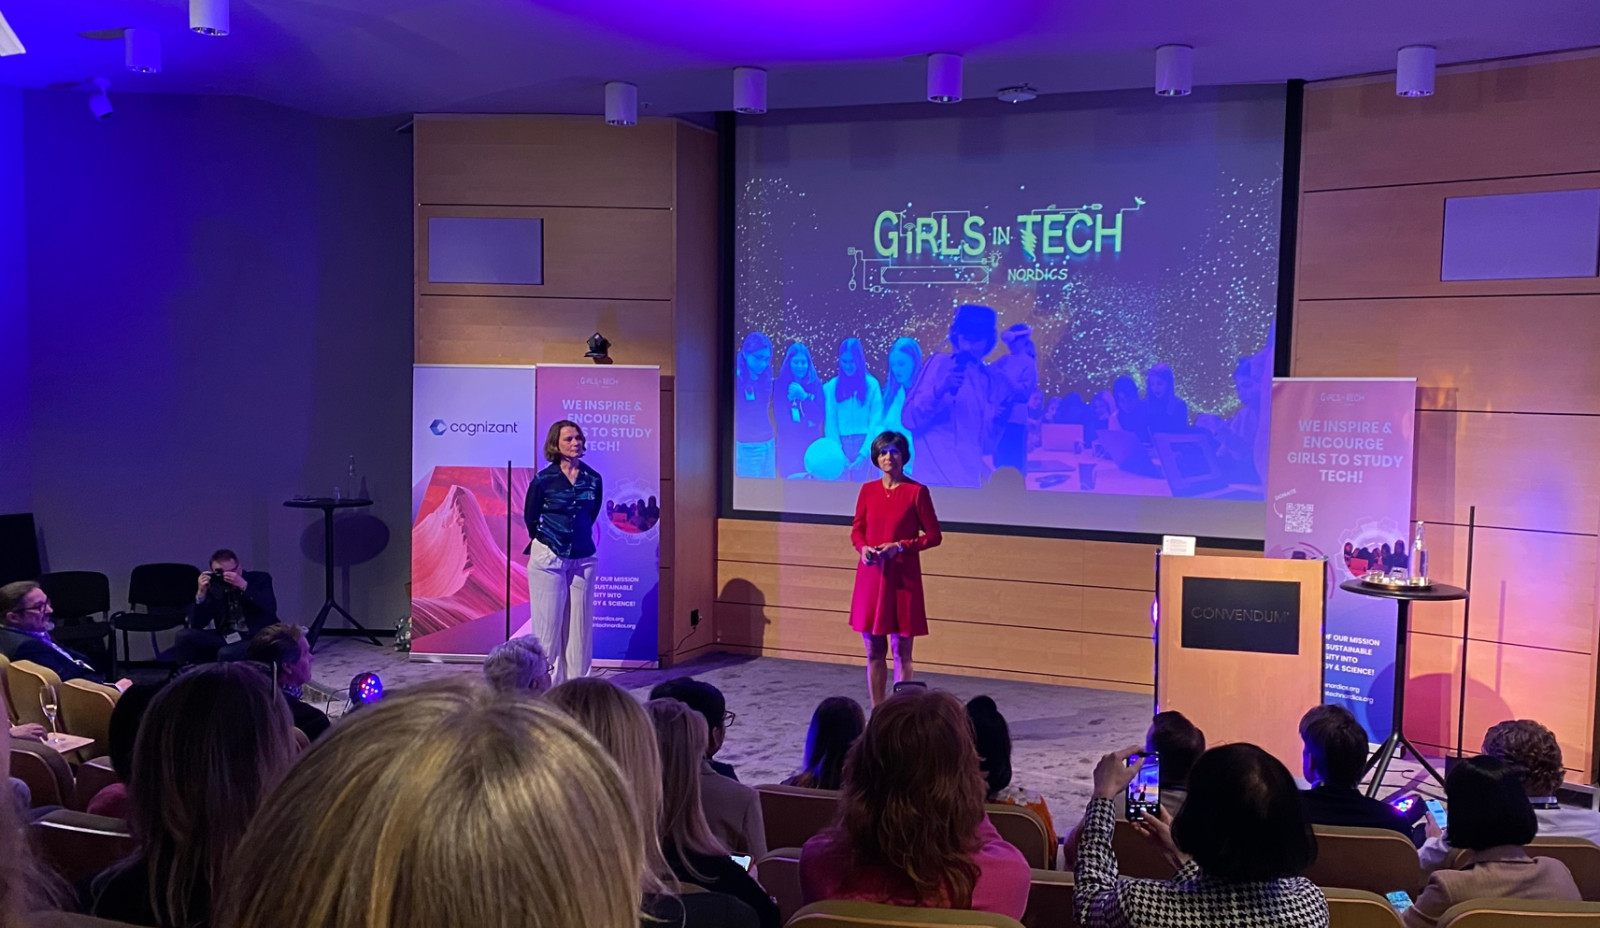 Girls in tech - women on stage